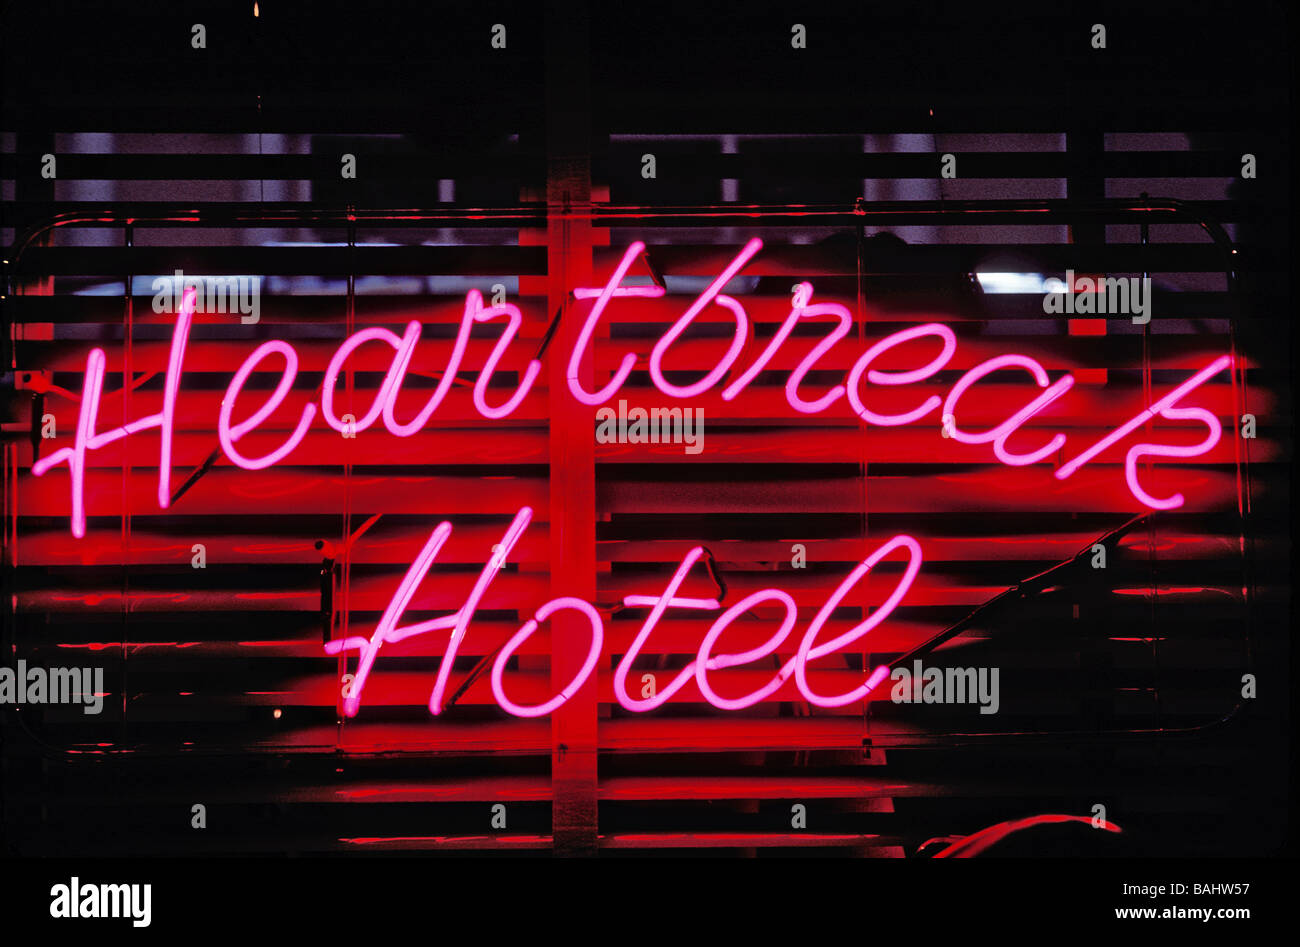 Heartbreak Hotel Pictures